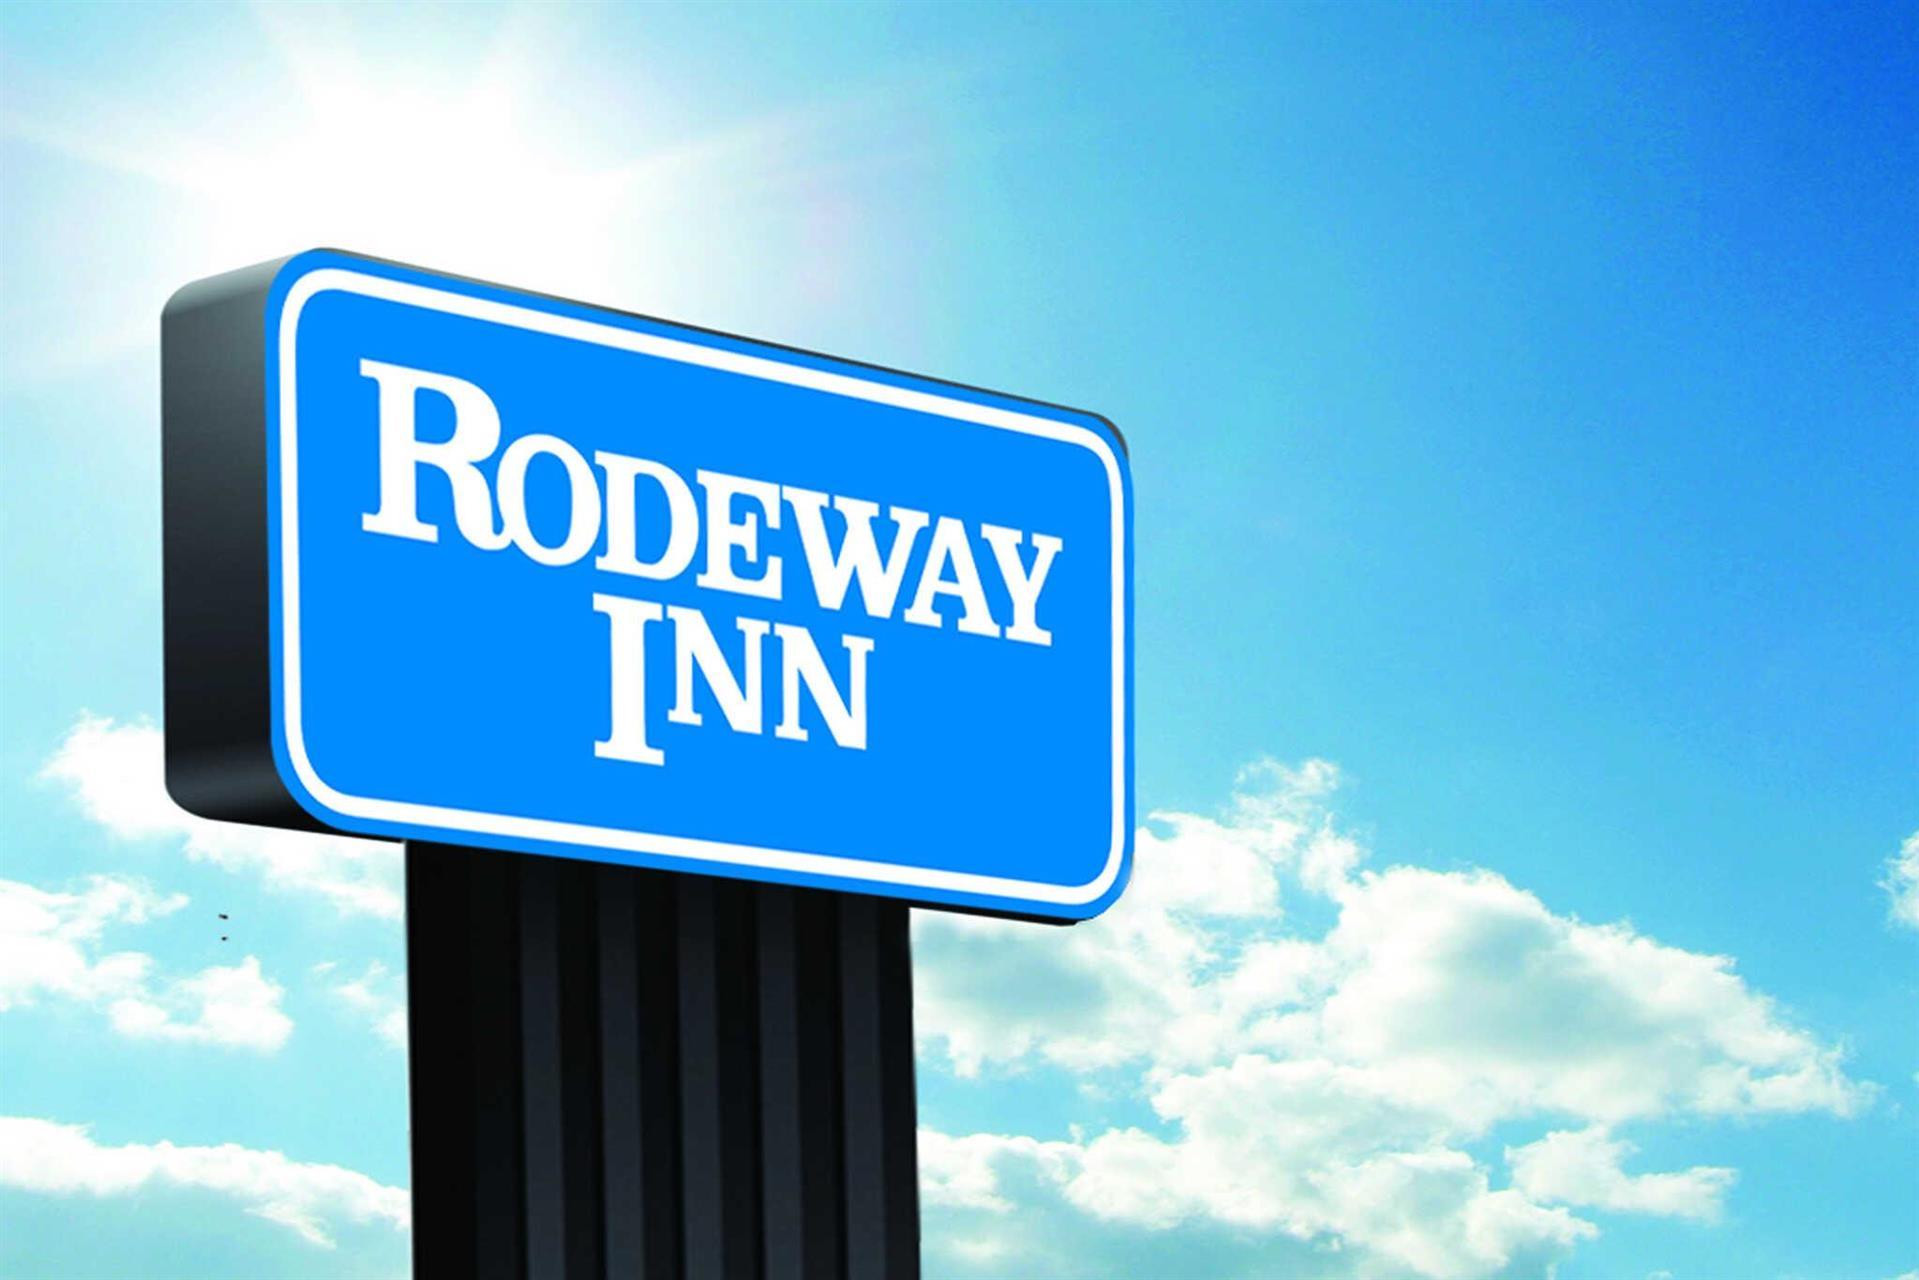 Rodeway Inn Nashville in Nashville, TN